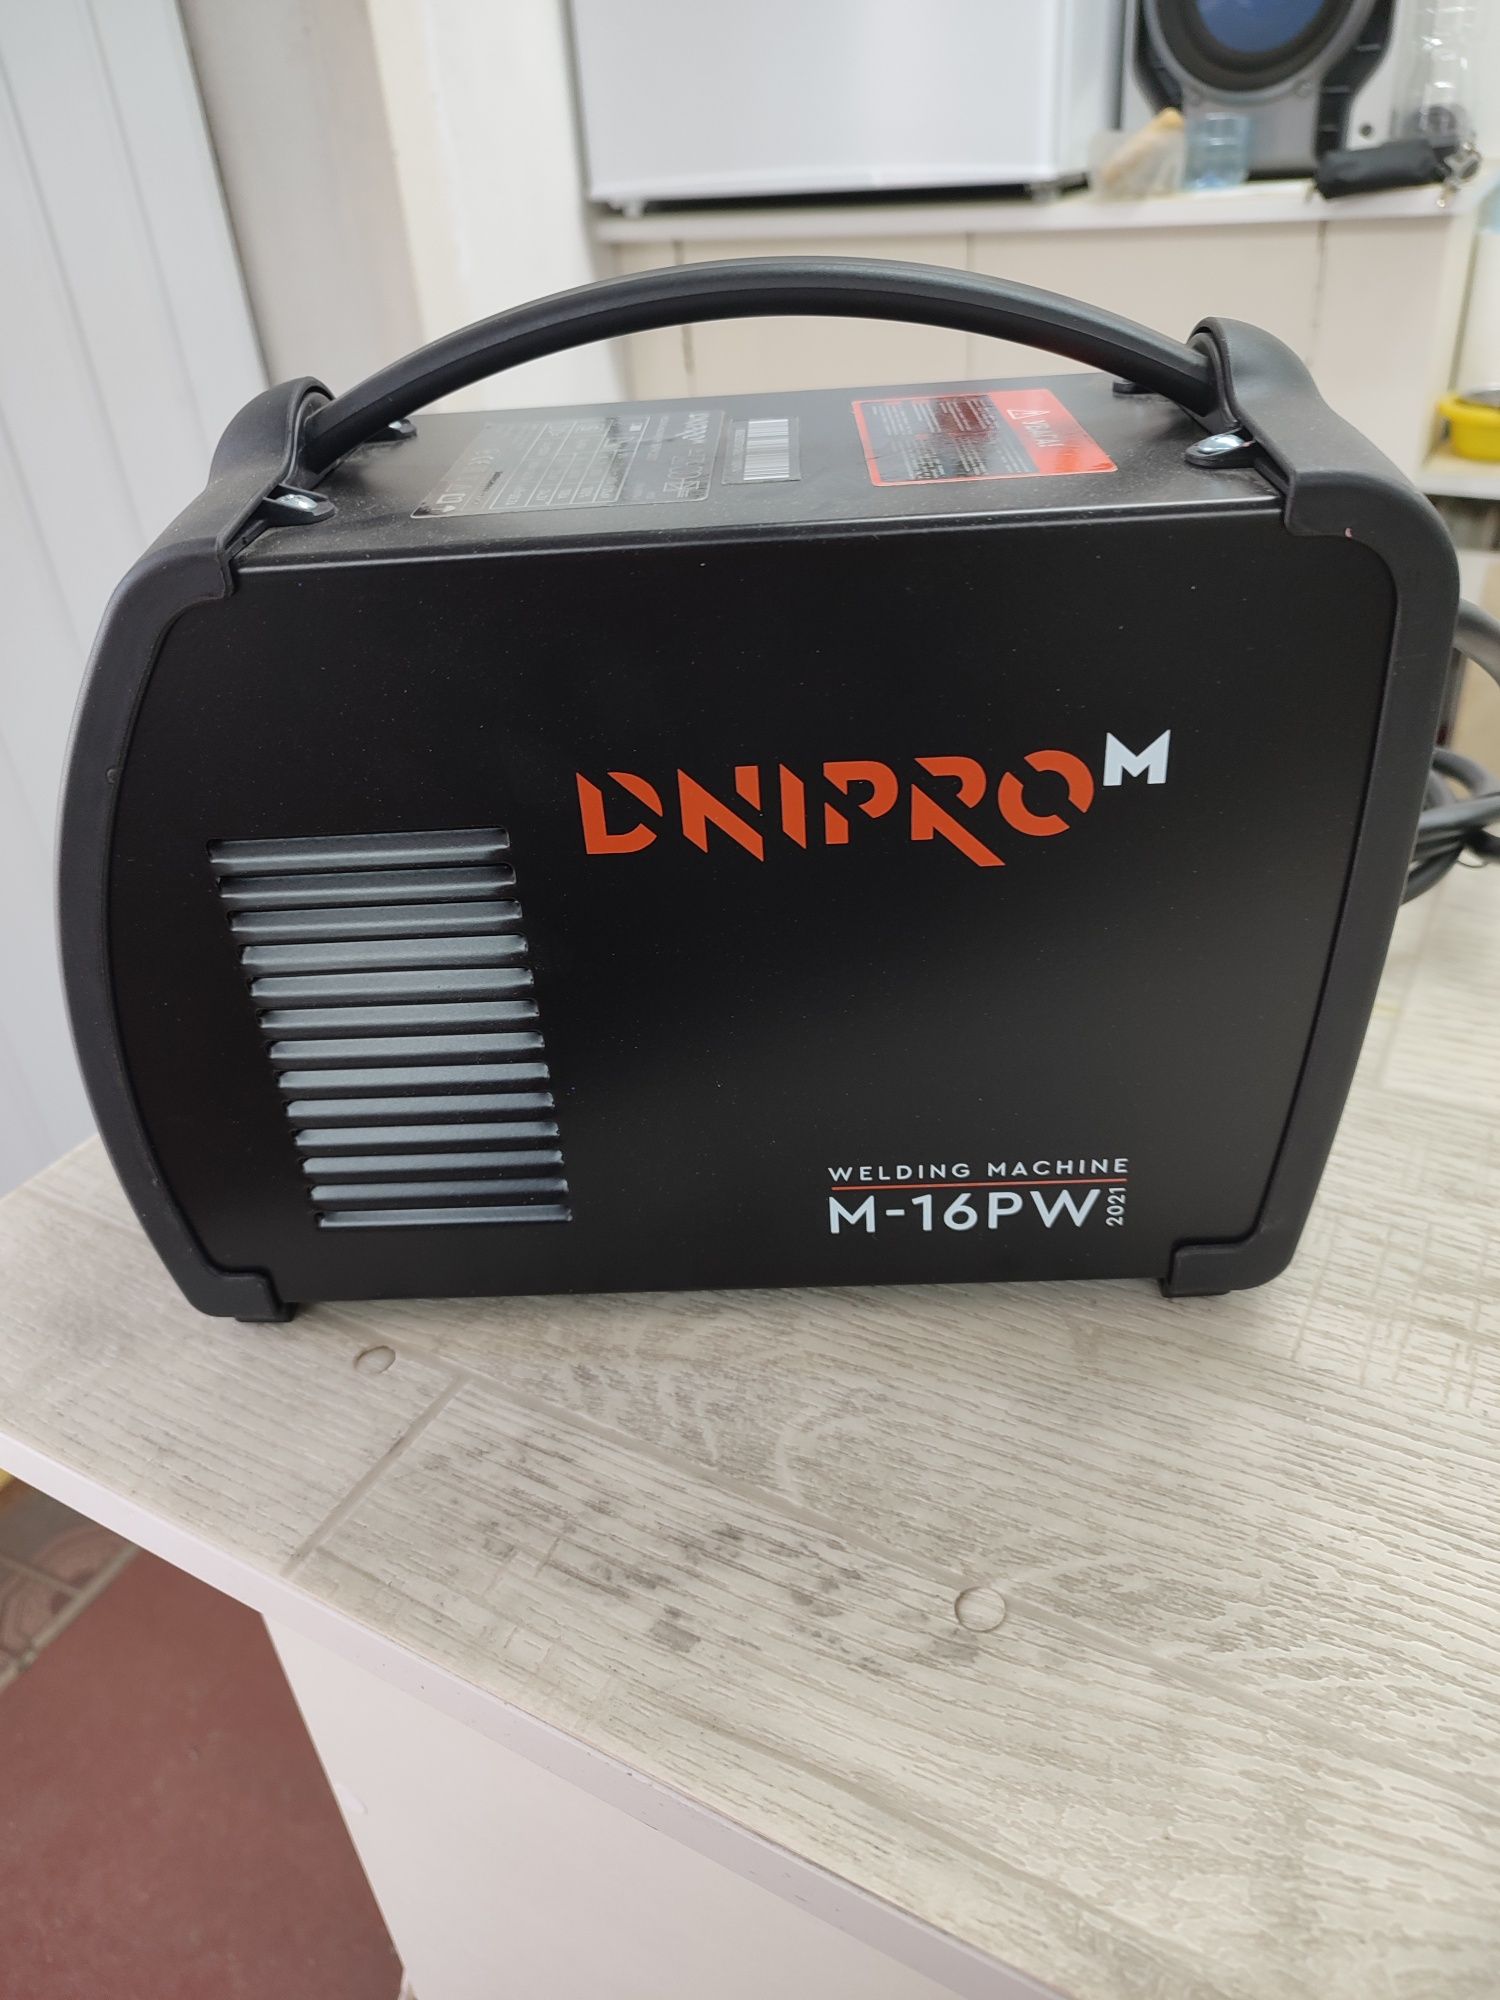 Продам новый в упаковке профессиональный сварочный аппарат Dnipro-M M-